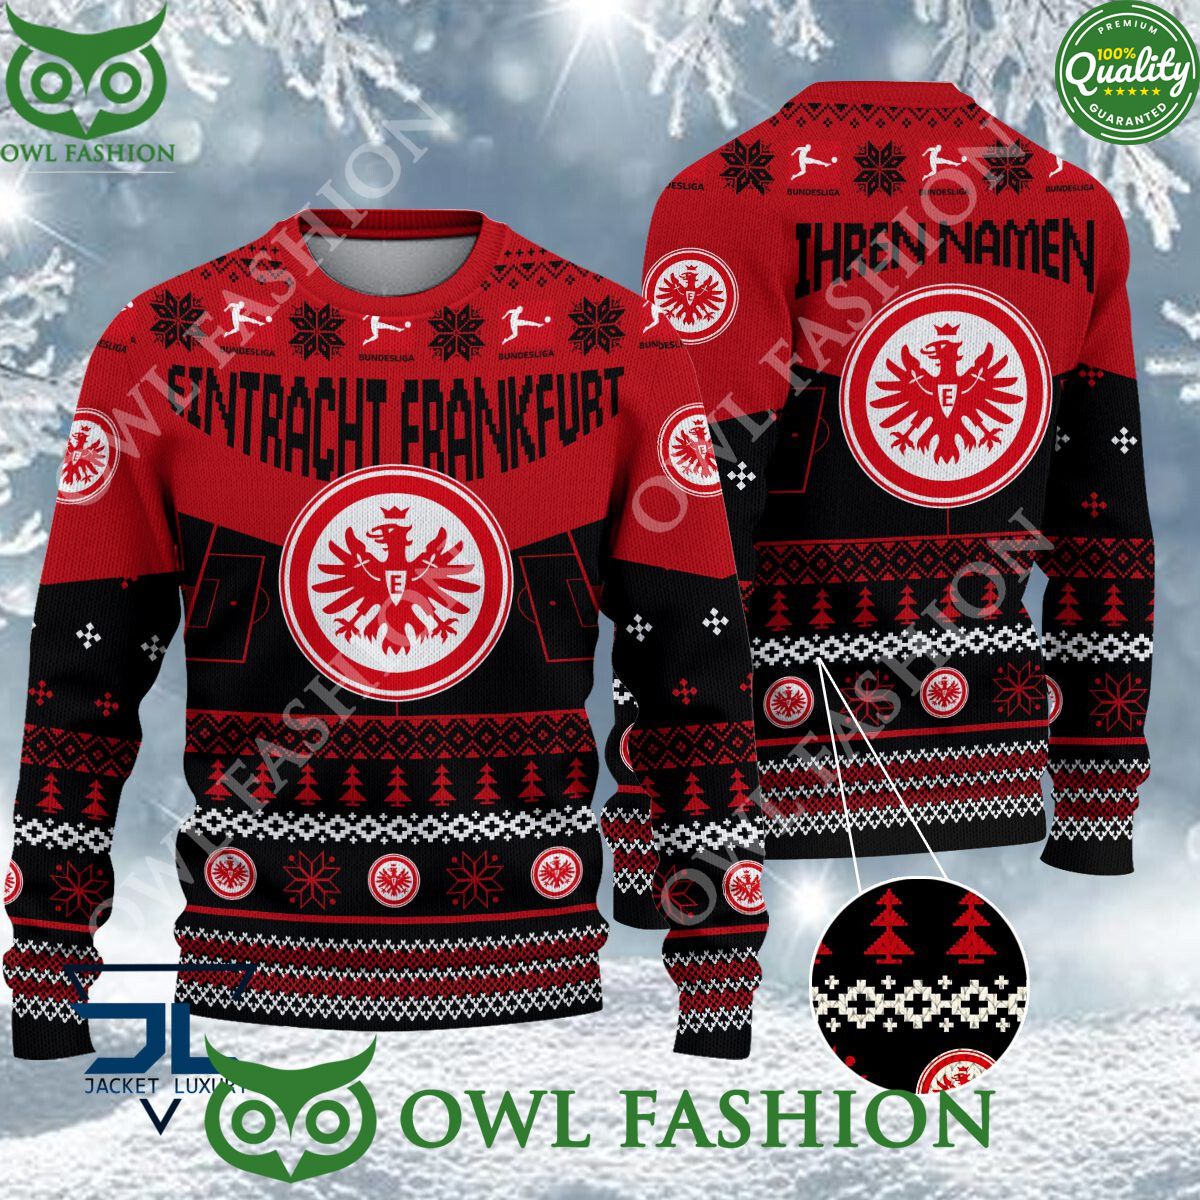 eintracht frankfurt limited for bundesliga fans ugly sweater jumper 1 0l0NR.jpg